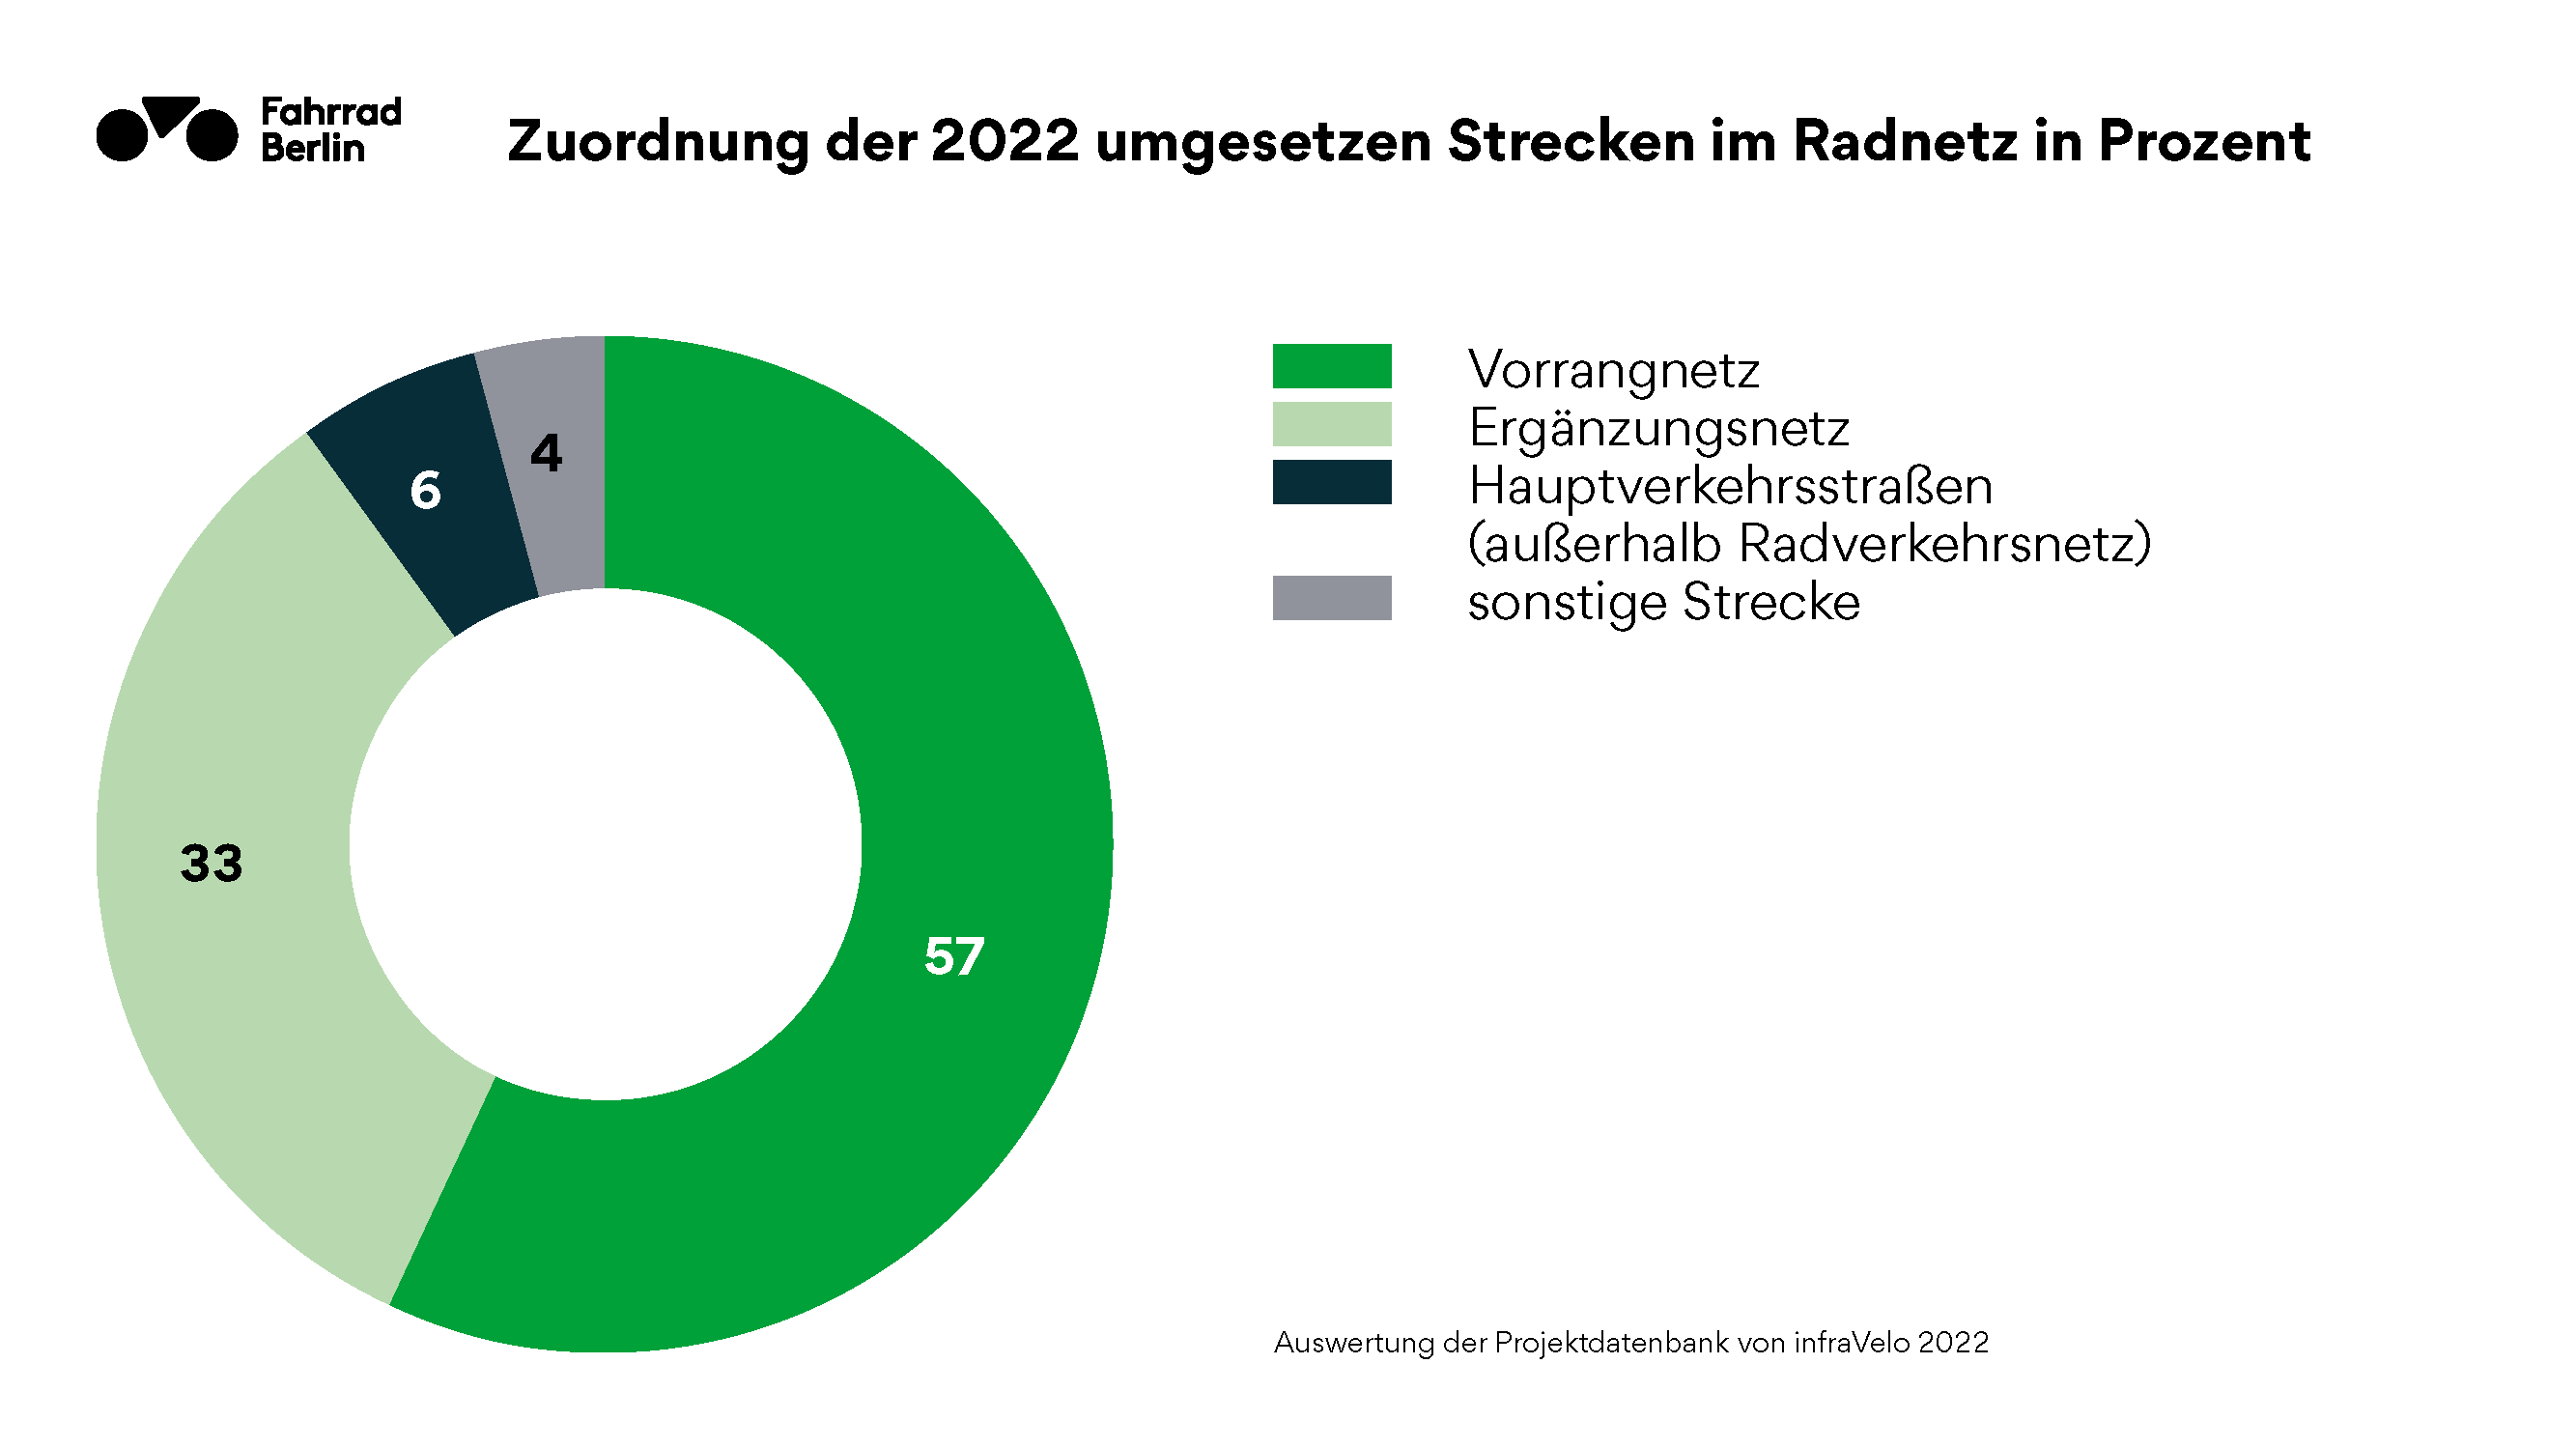 Zuordnung der 2022 umgesetzen Strecken im Radnetz in Prozent